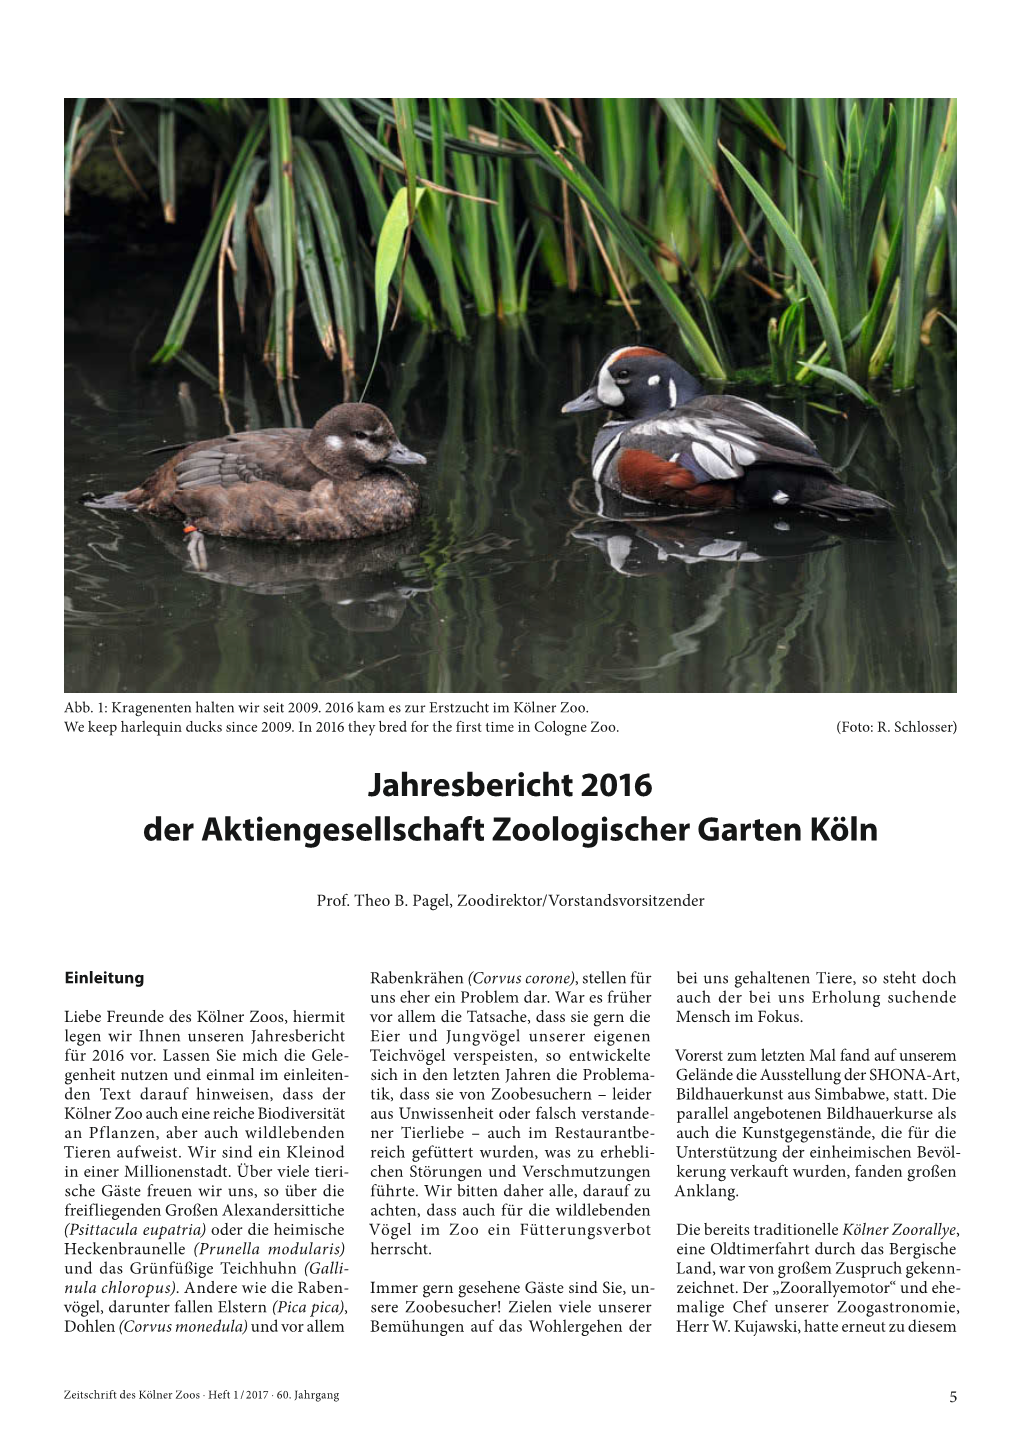 Jahresbericht 2016 Der Aktiengesellschaft Zoologischer Garten Köln